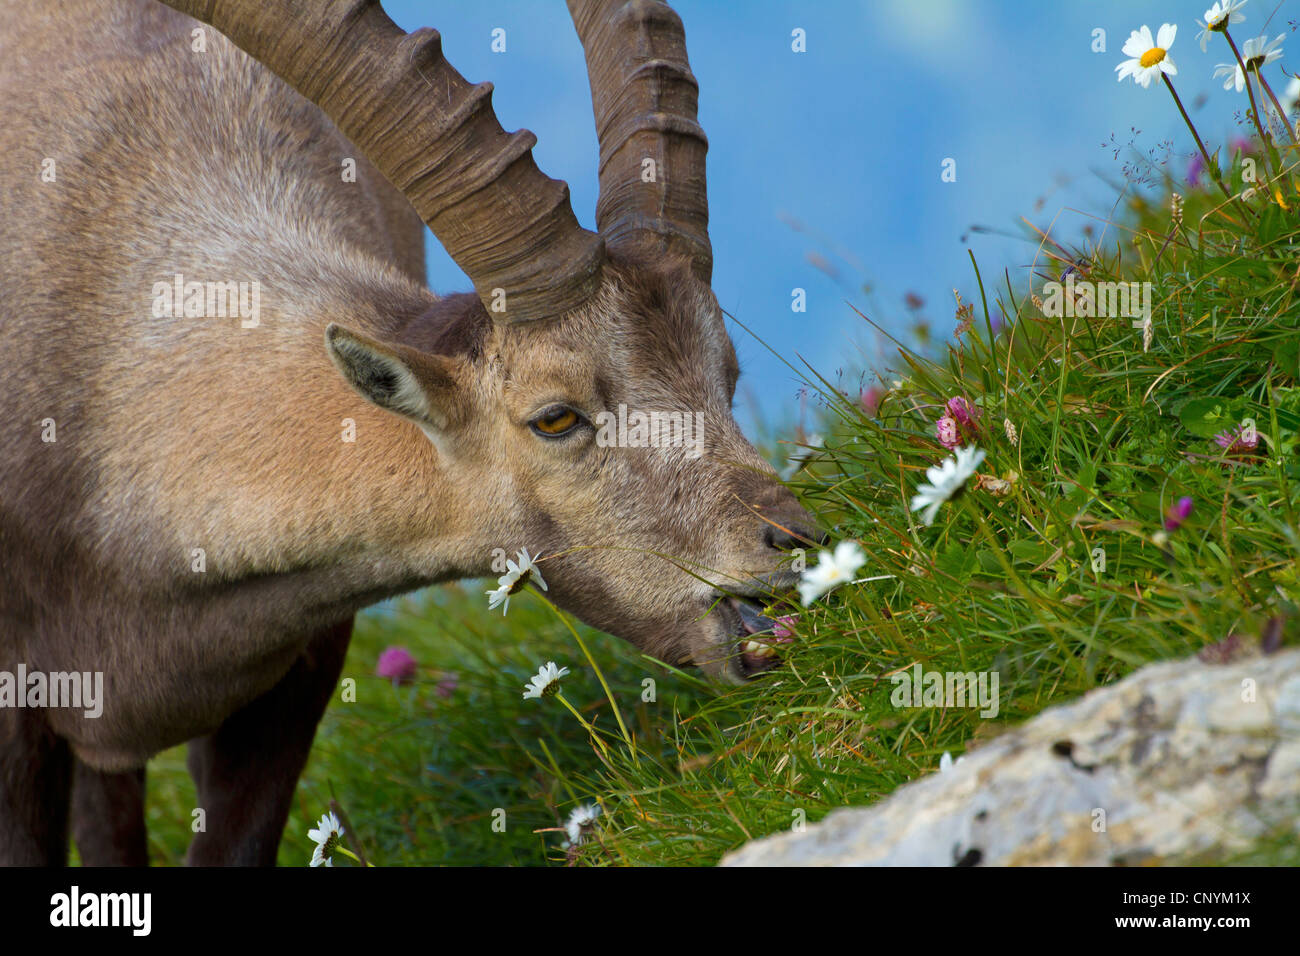 Bouquetin des Alpes (Capra ibex), buck sur une pente se nourrissant de fleurs, Suisse, Sankt Gallen, Chaeserrugg Banque D'Images